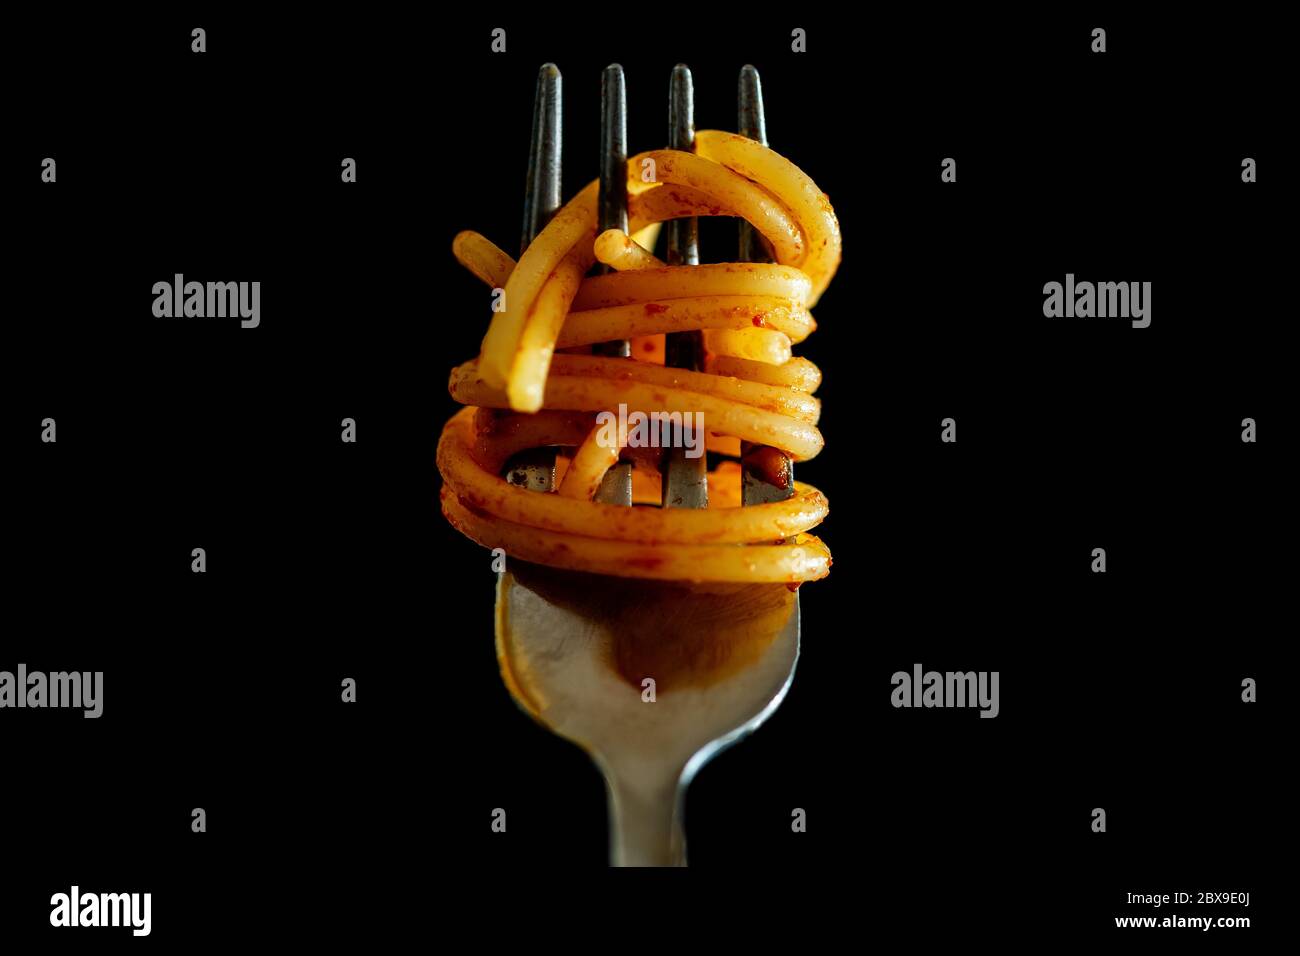 Primo piano di Spaghetti italiani su una forchetta con salsa di pomodoro su fondo nero. Cucina tipica italiana, stereotipo per identificare la cultura italiana. Foto di alta qualità Foto Stock